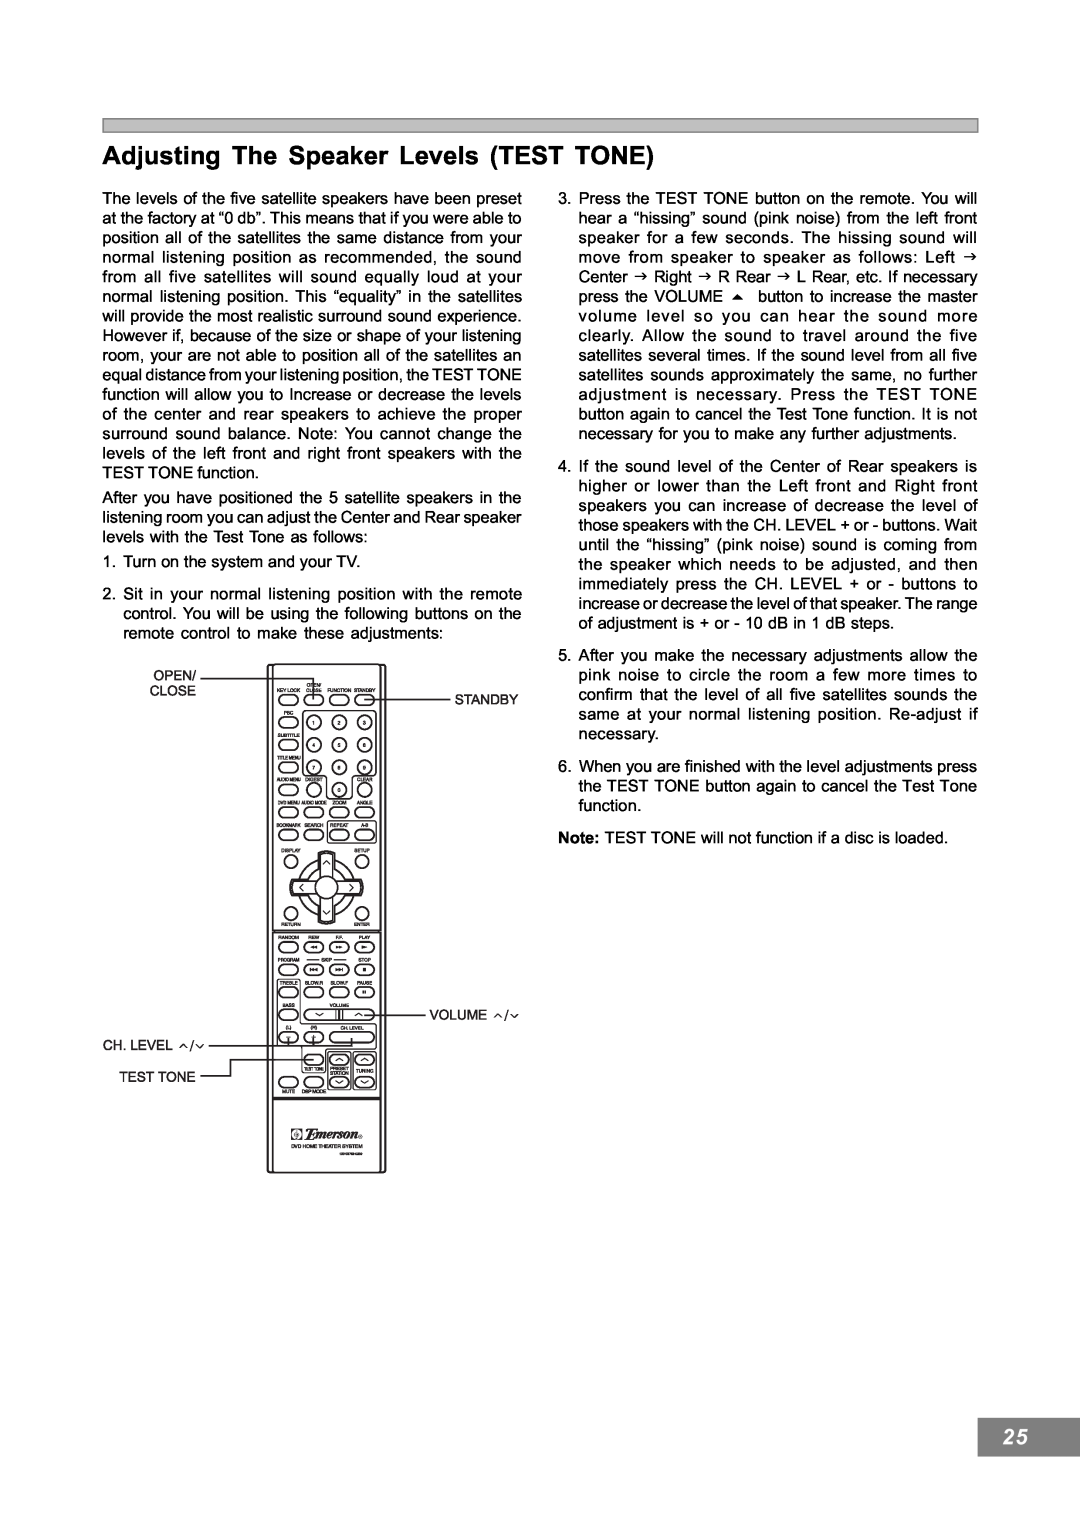 Emerson AV101 manual Adjusting The Speaker Levels TEST TONE 